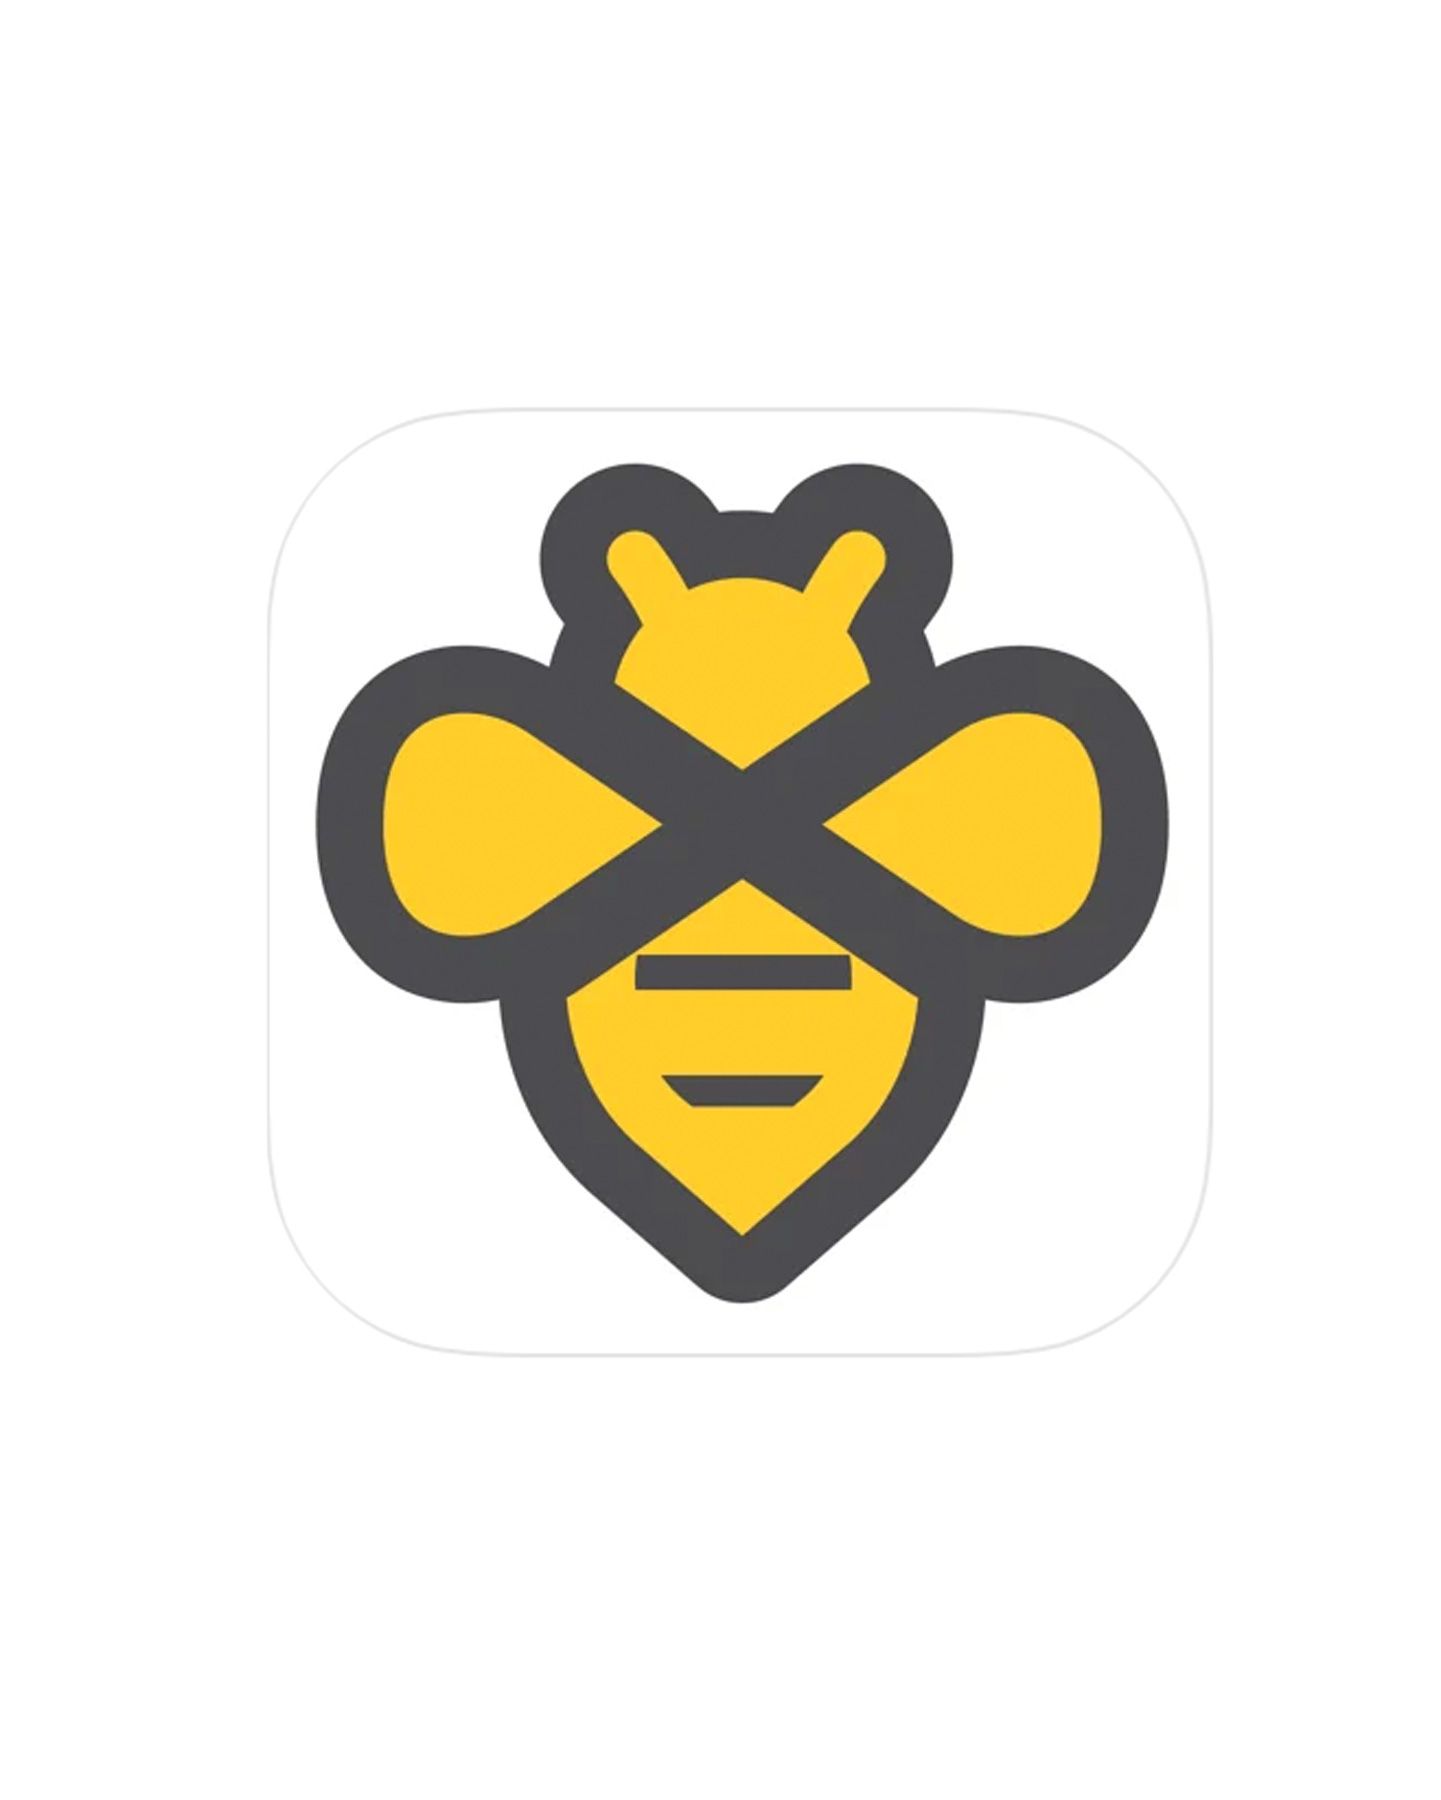 Aplacaidean cinneasachd: app Beeminder